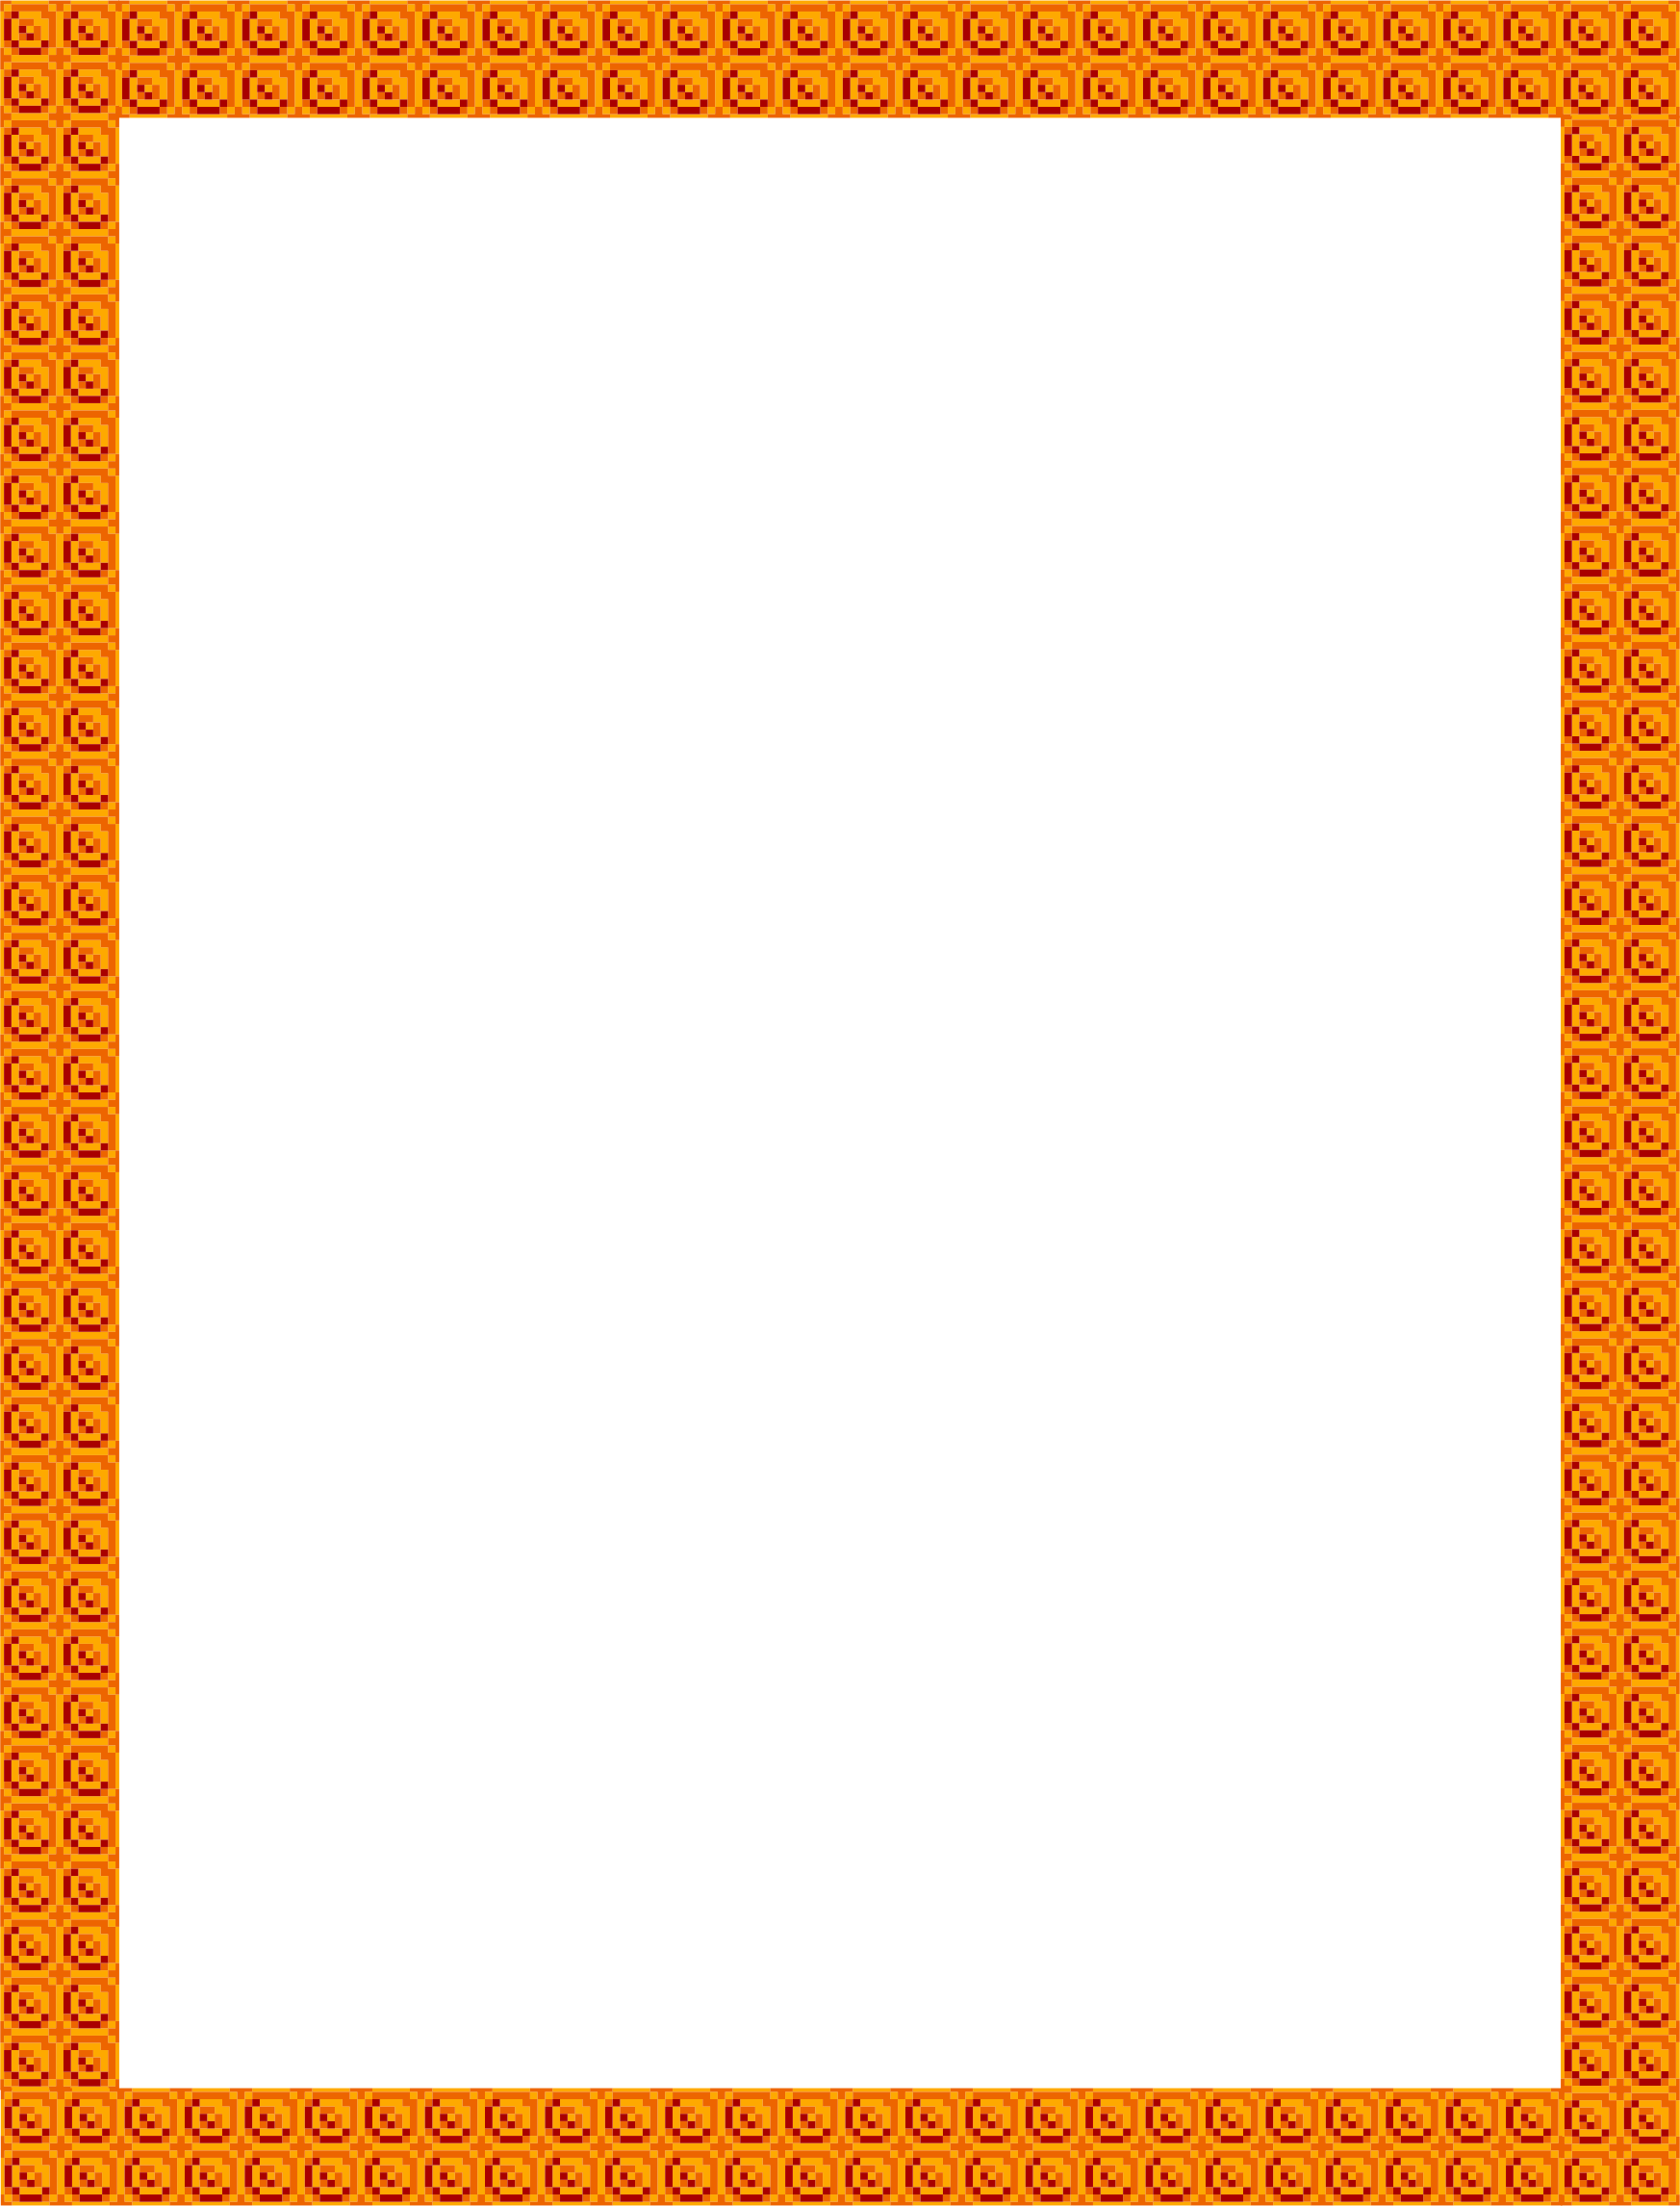 Square Orange Frame PNG Download Image